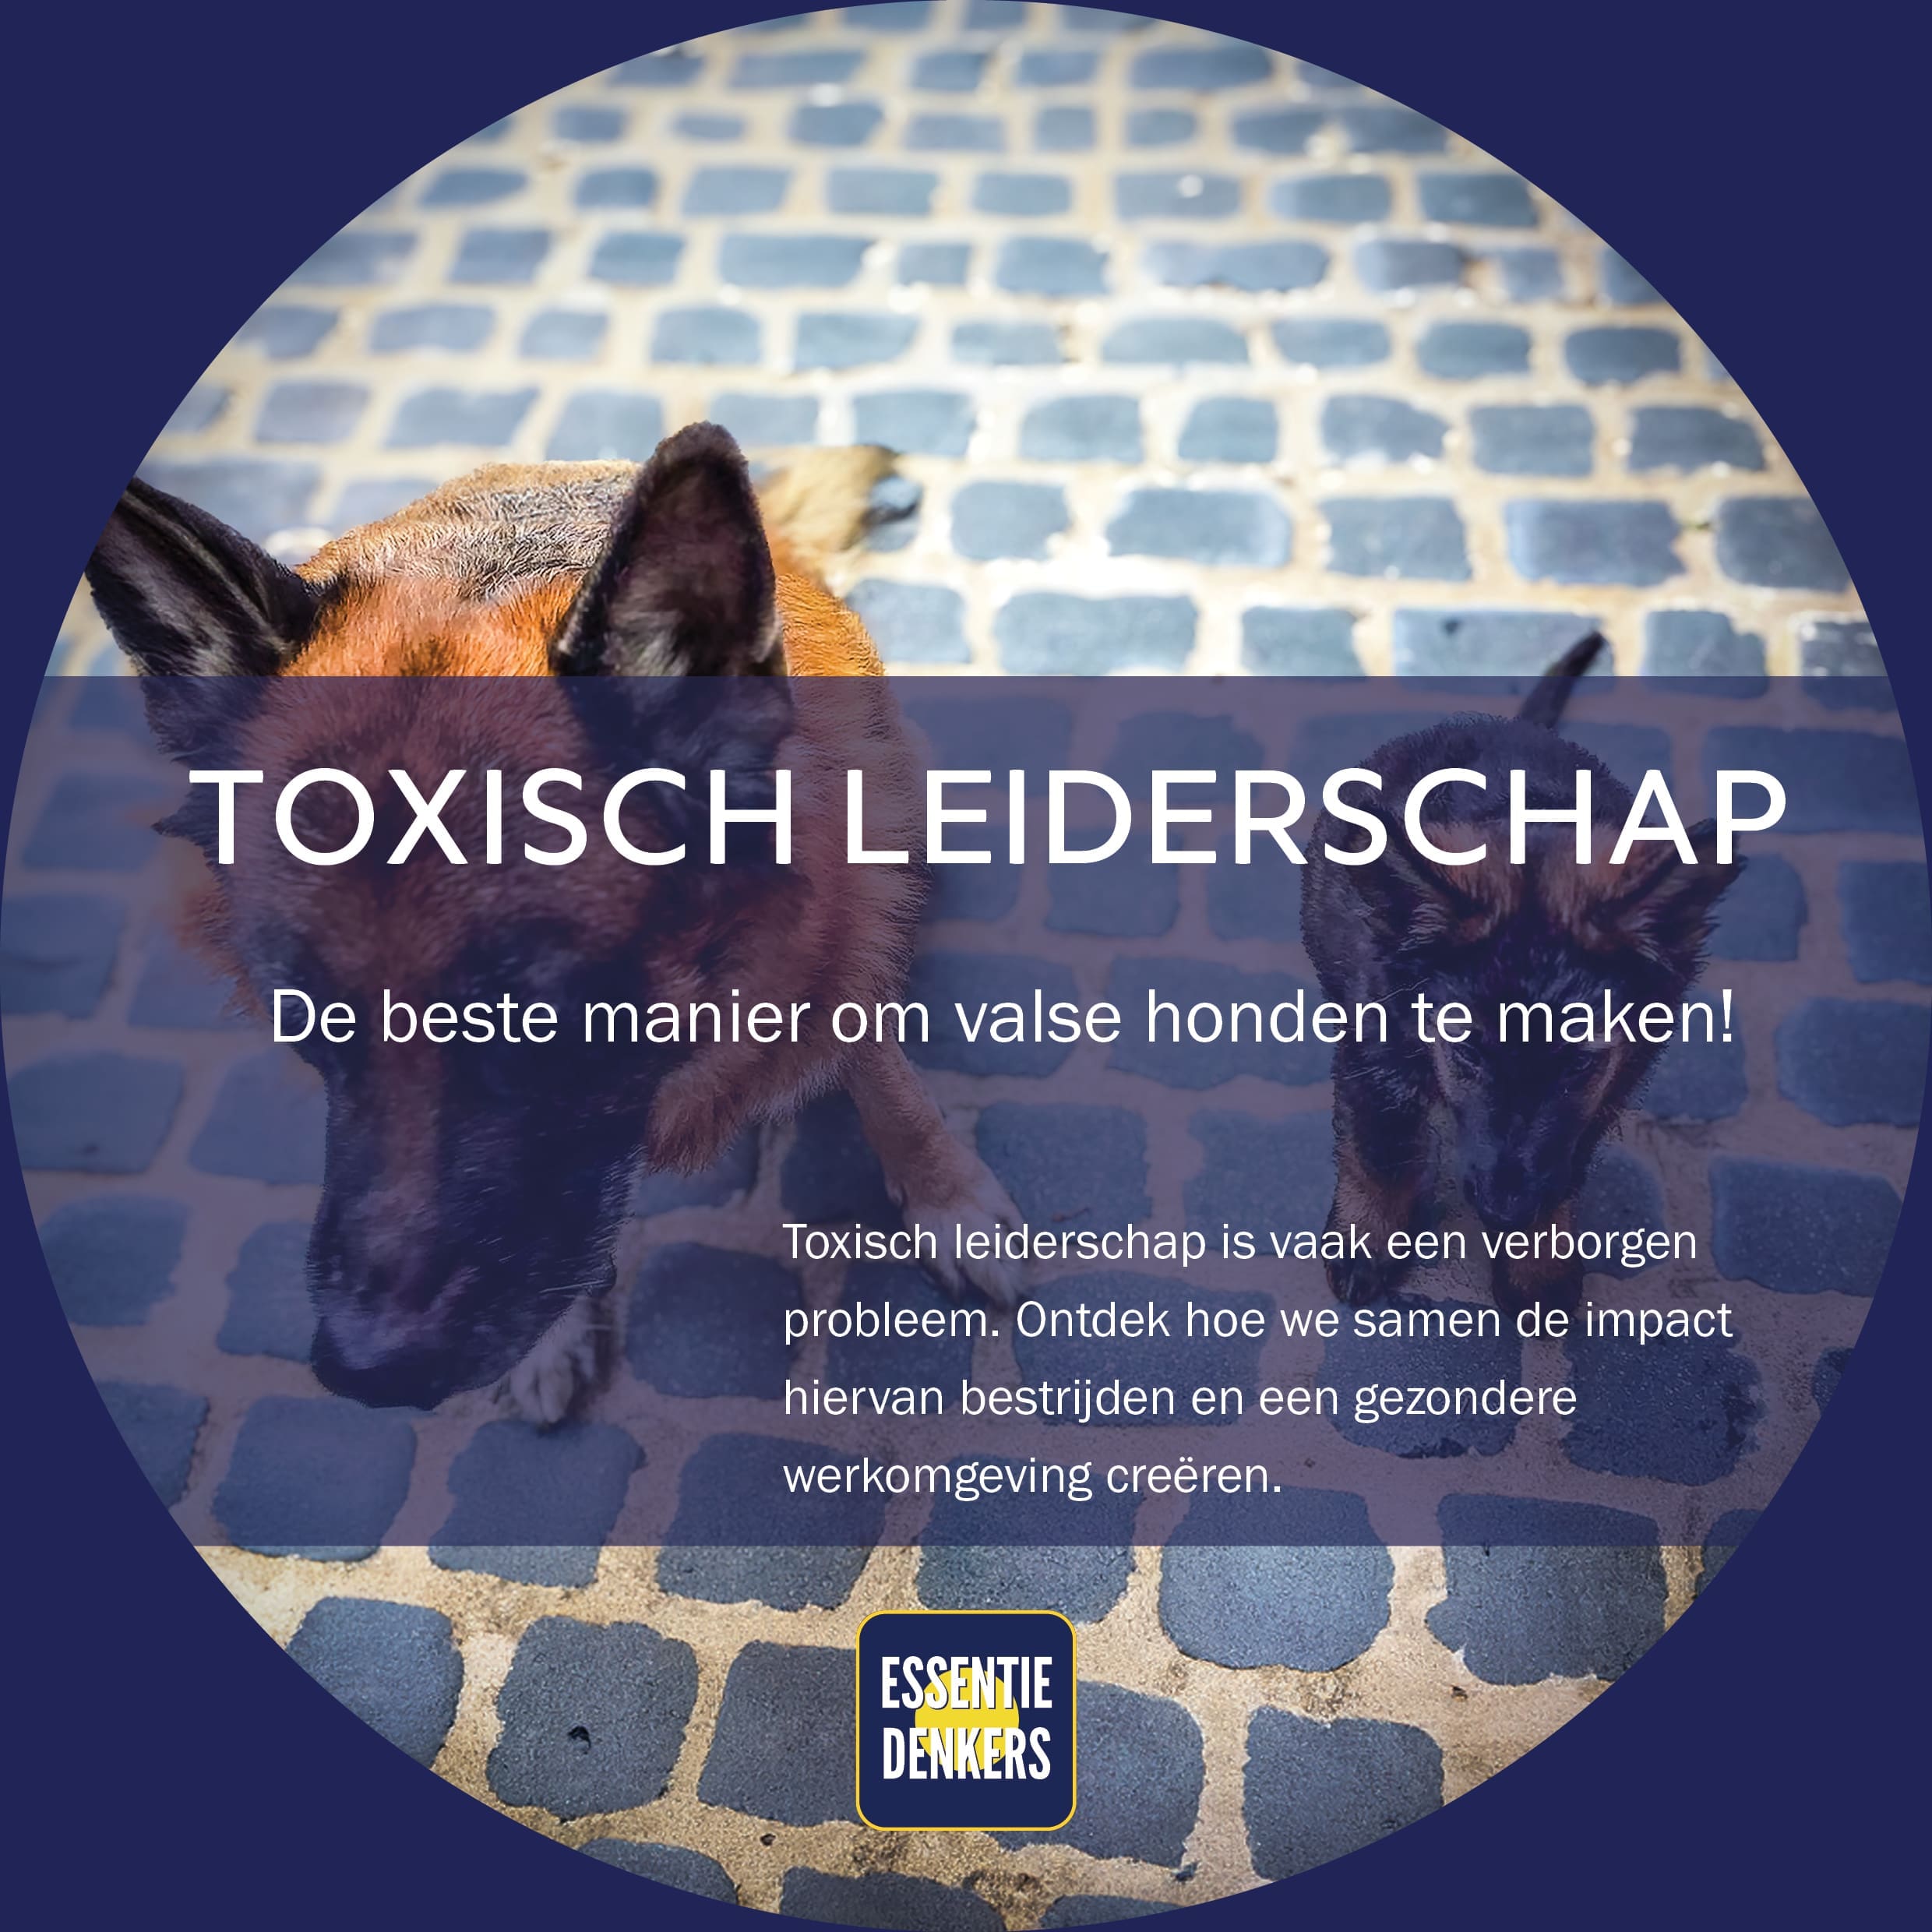 Featured image for “Toxisch leiderschap, de beste manier om valse honden te maken!”